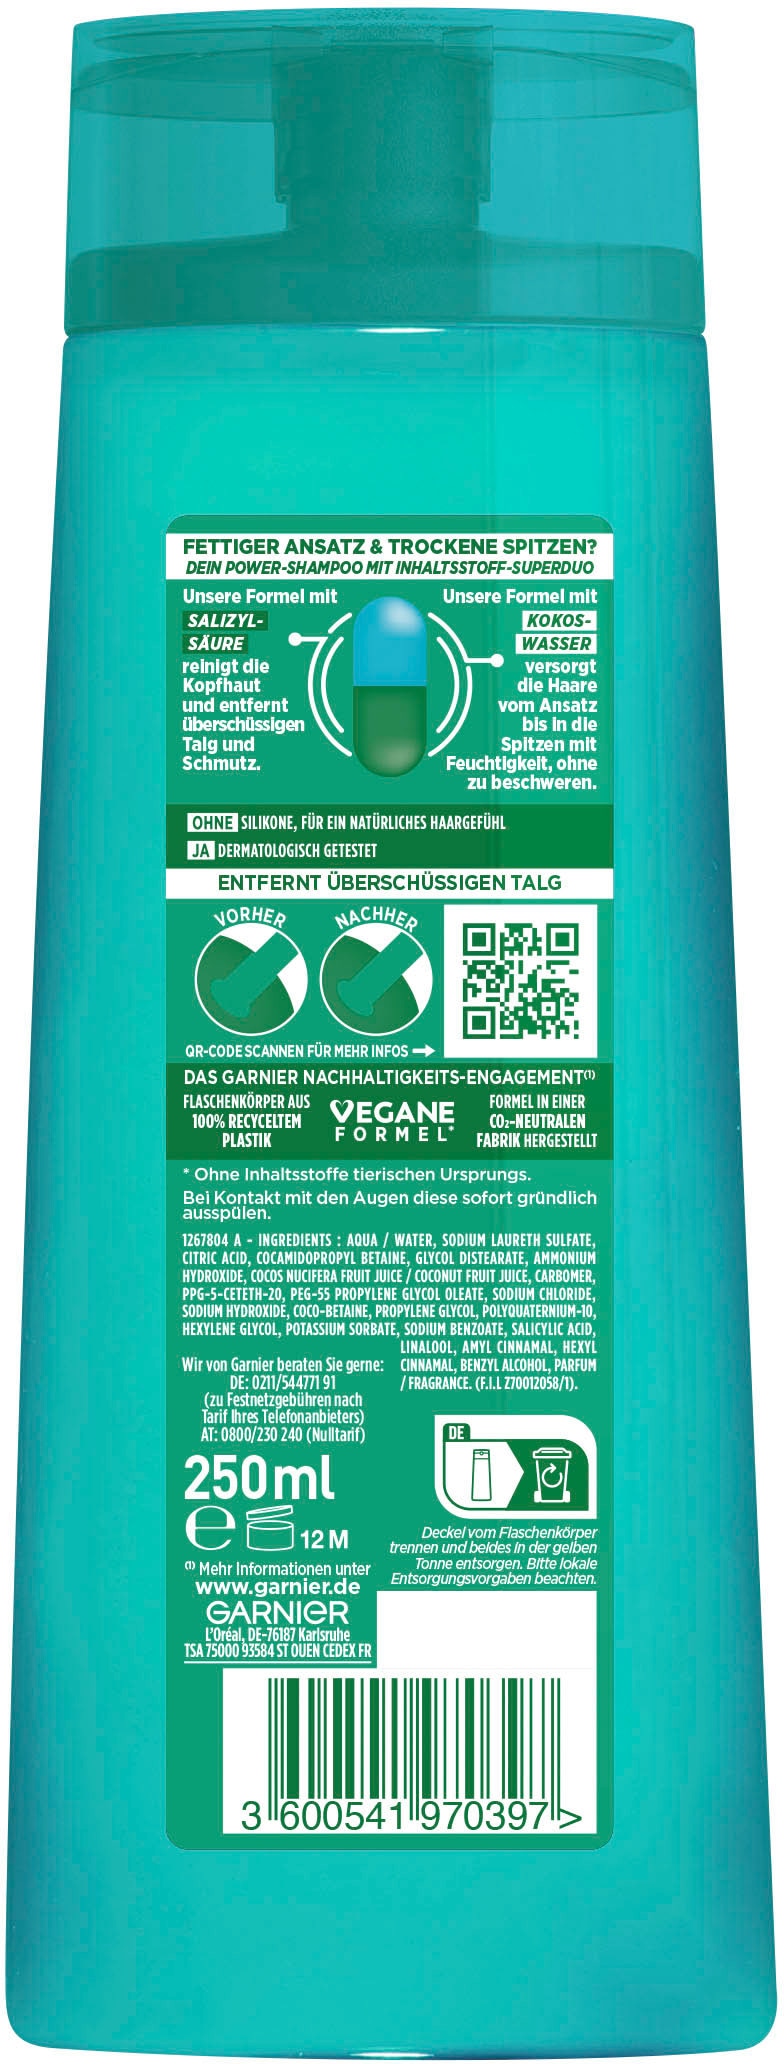 GARNIER Haarshampoo »Garnier online Fructis UNIVERSAL bei Water Coco Shampoo«